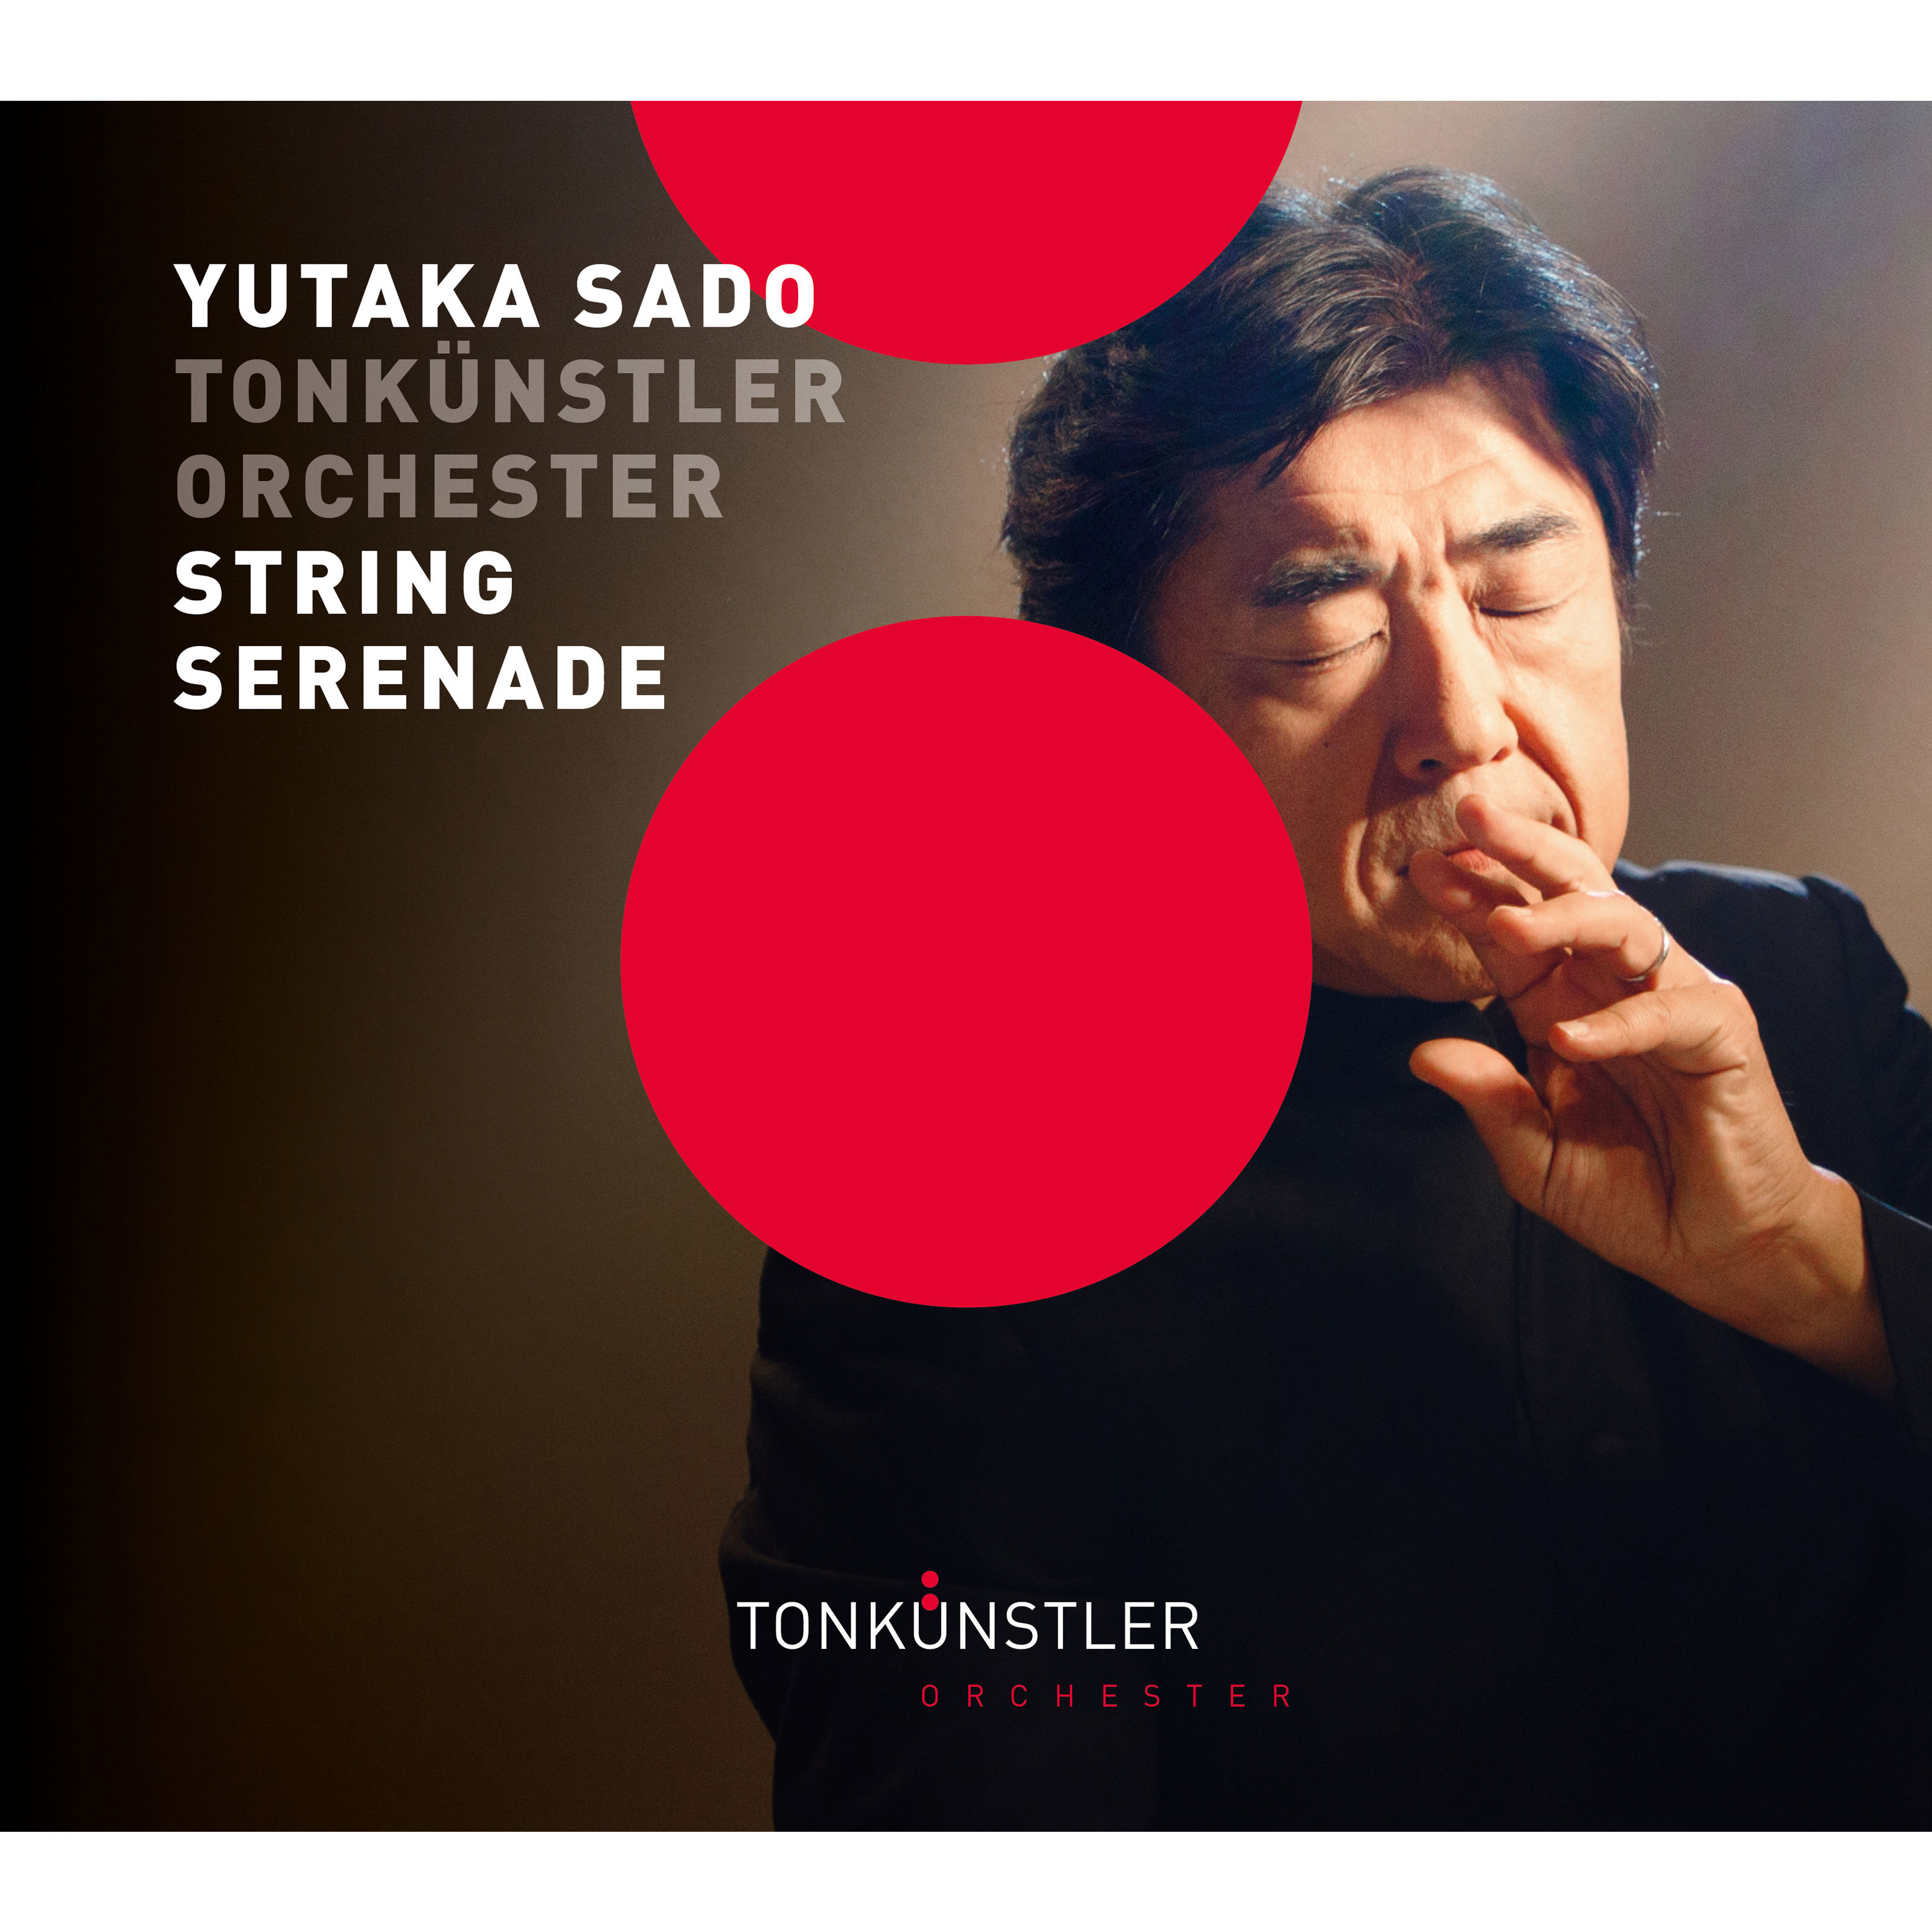 Tonkünstler Orchester – String Serenade